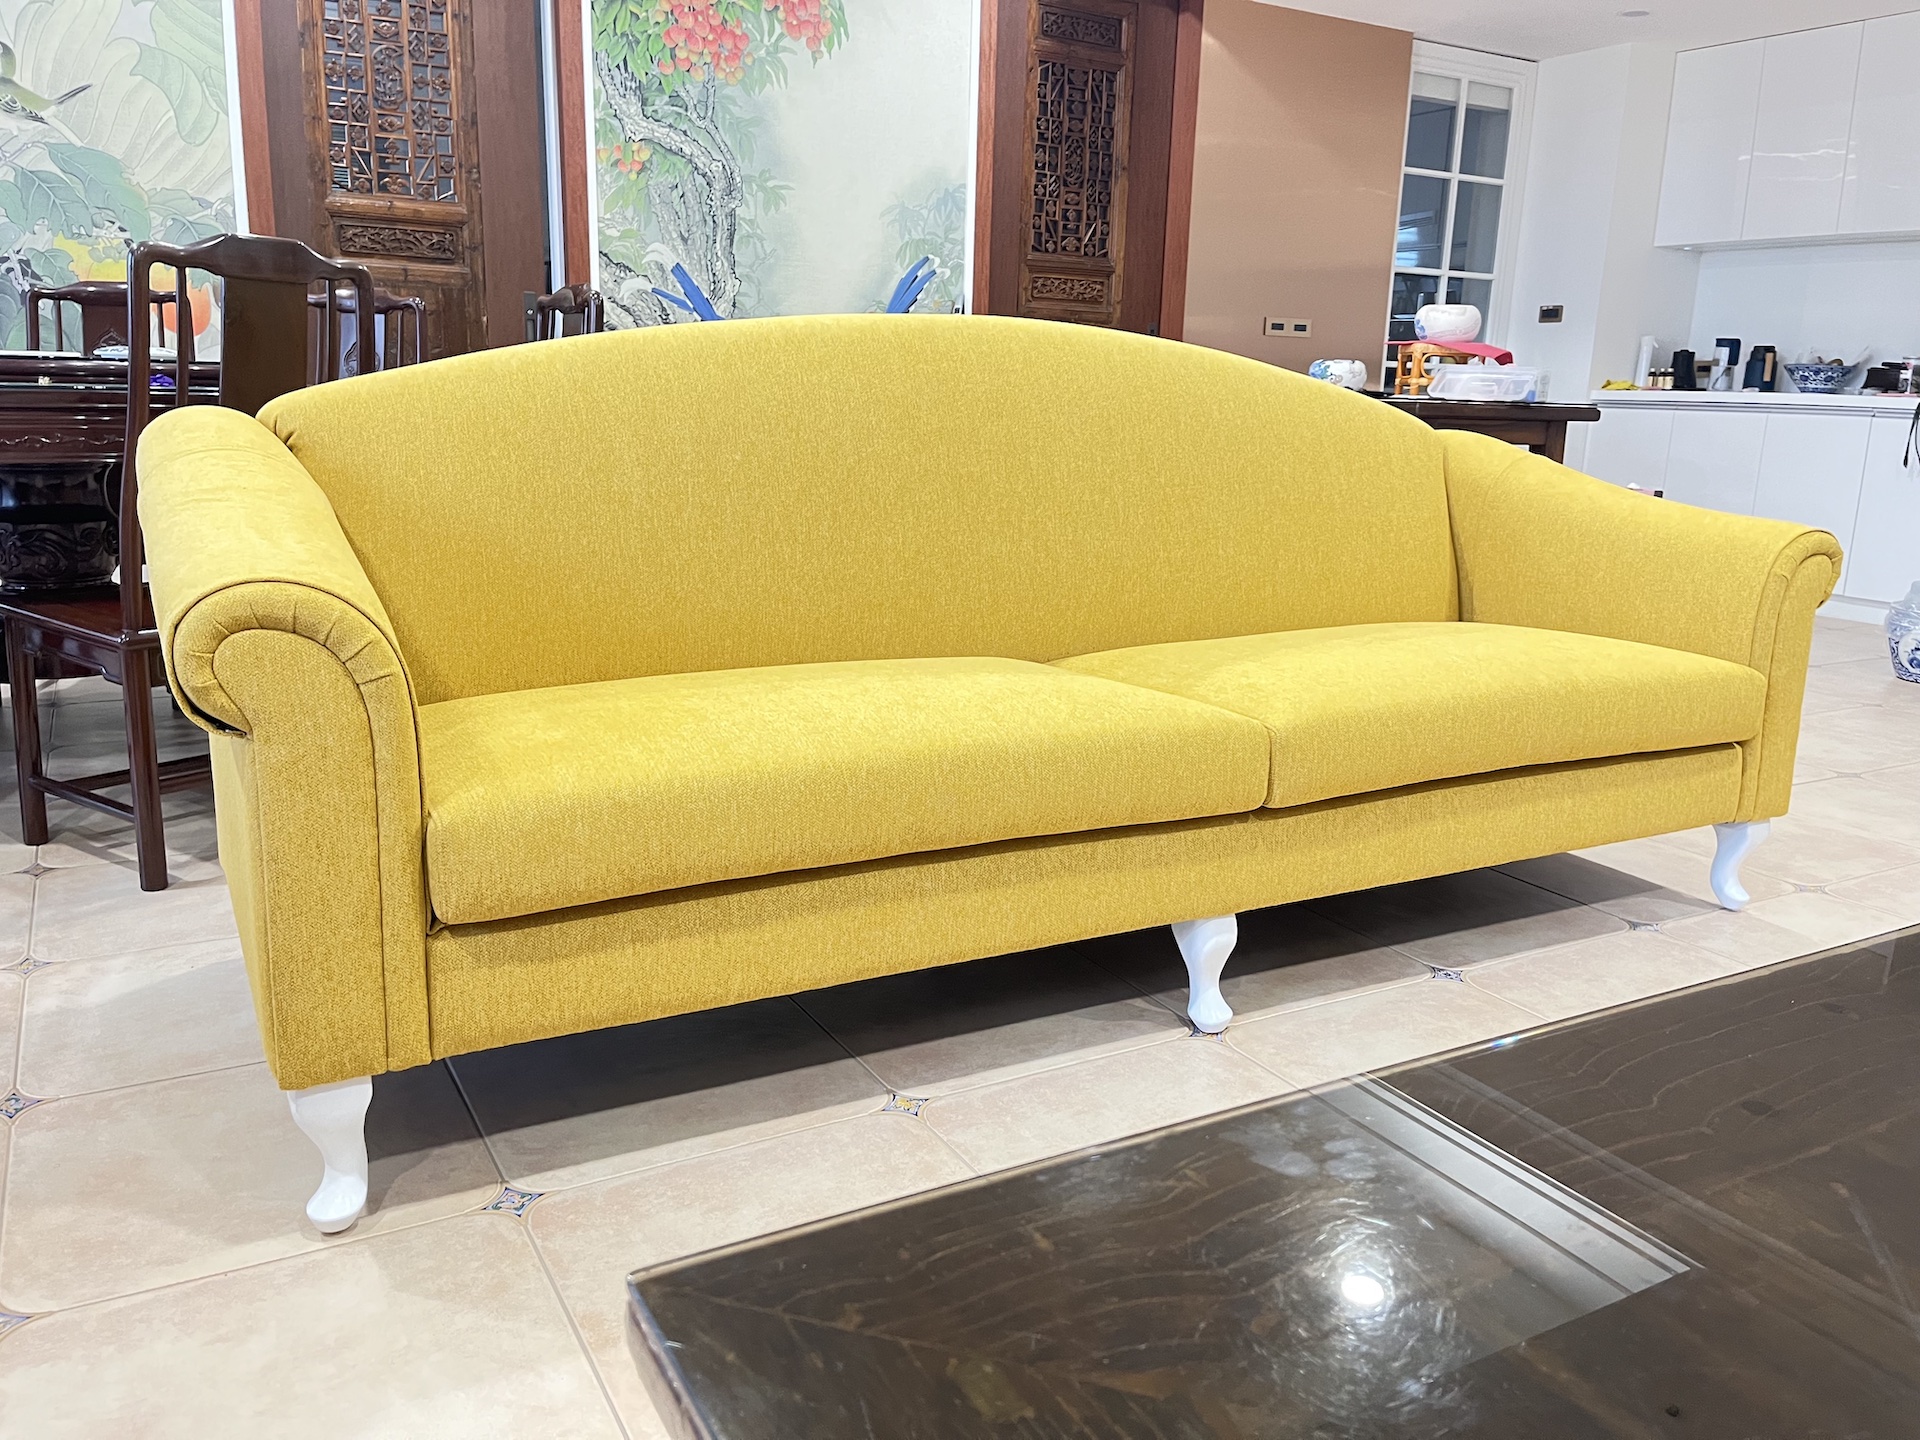 【客戶案例分享】台中東區古典造型沙發訂製